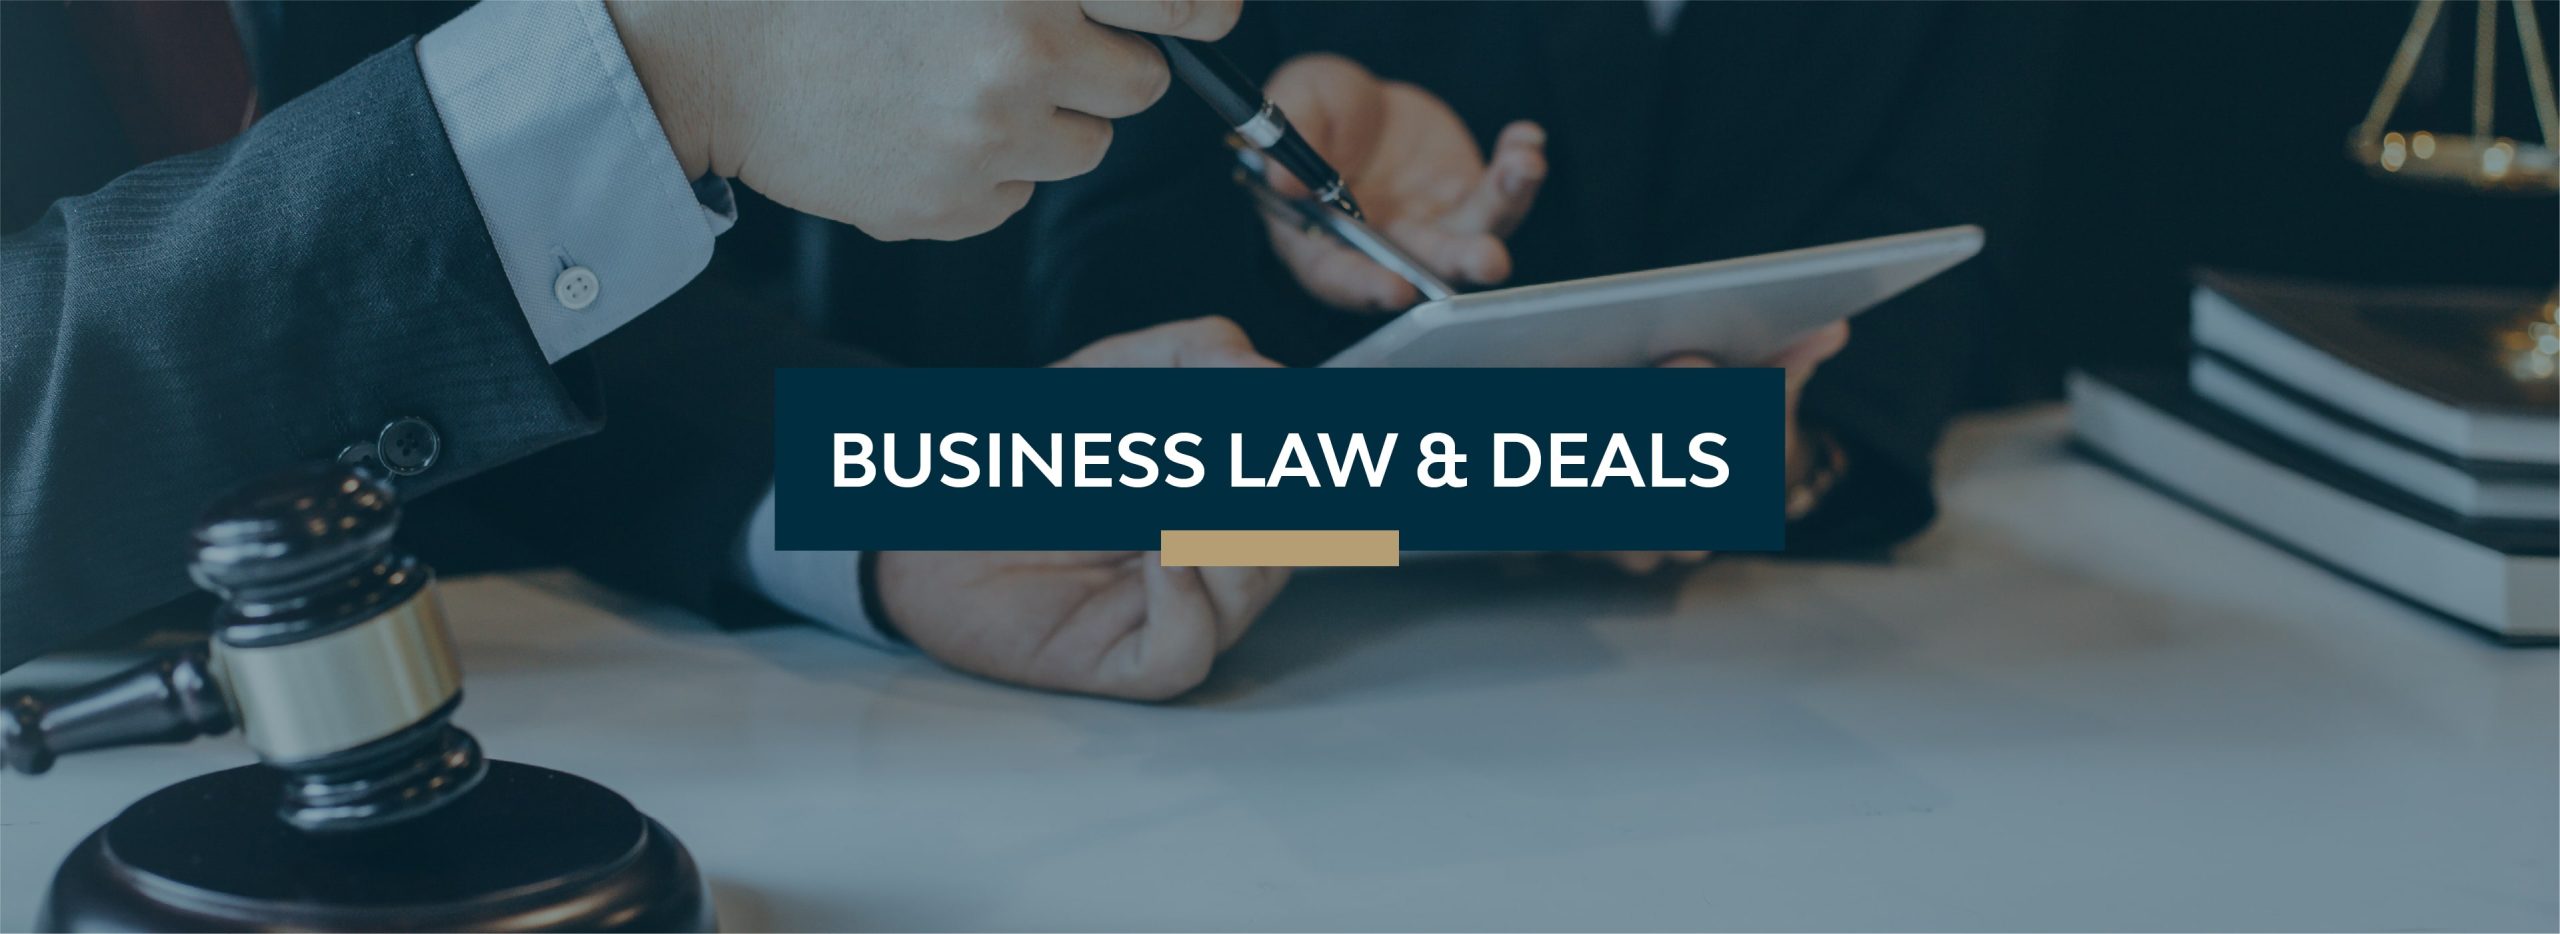 Business Law & Deals